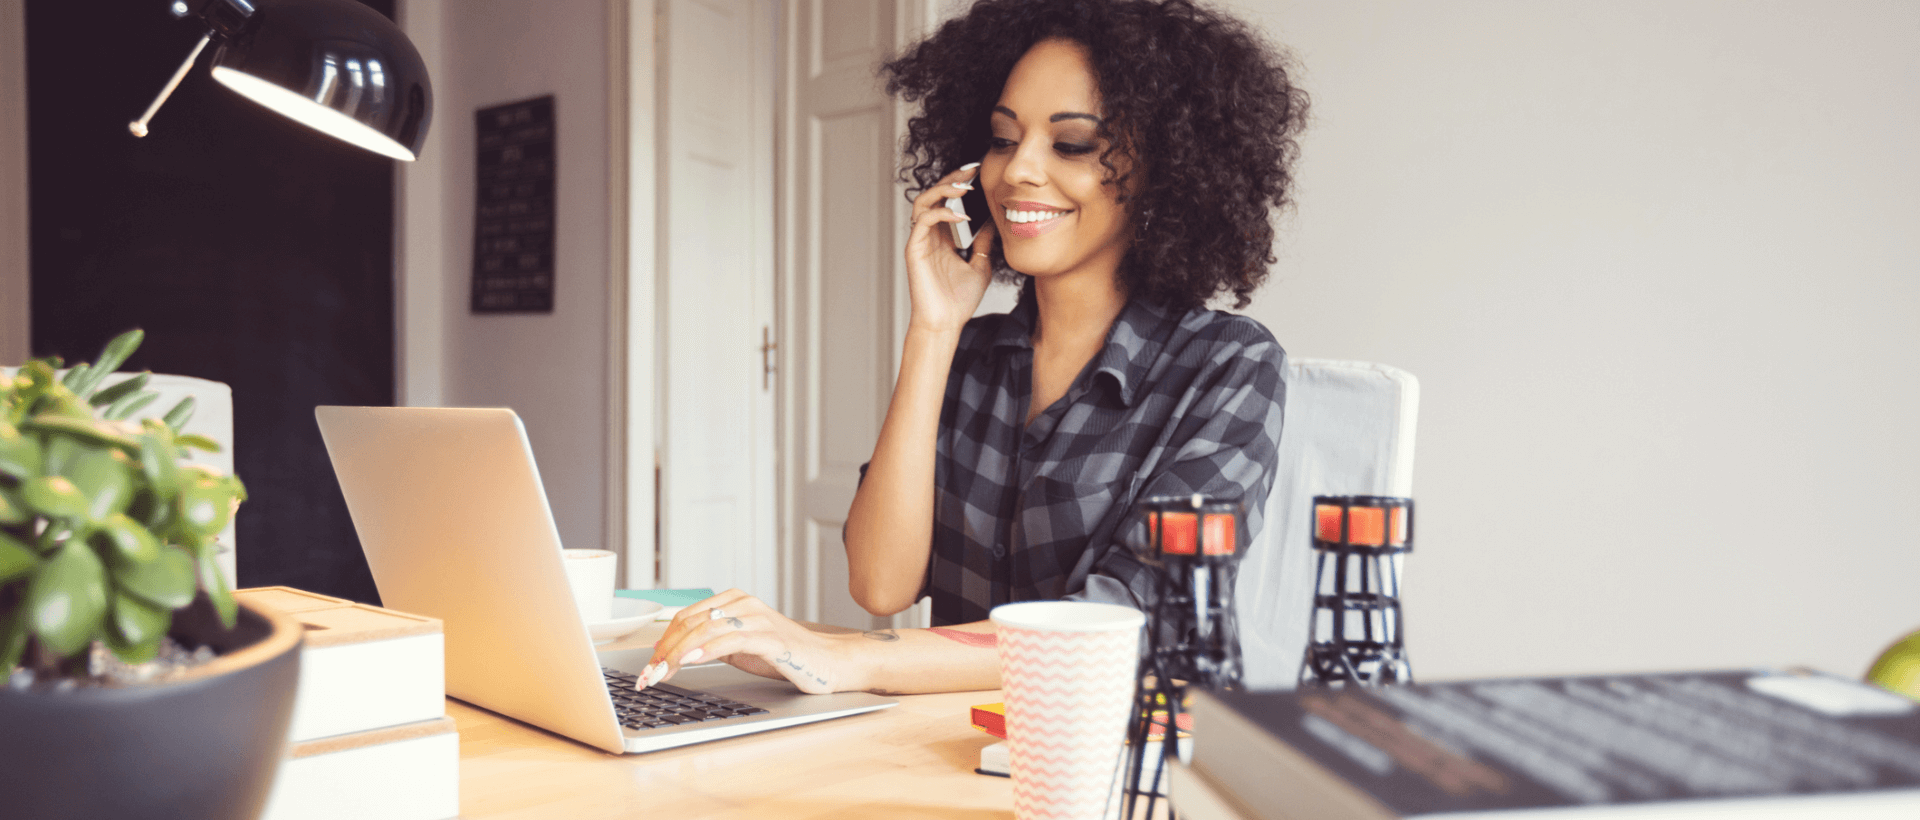 Een jonge vrouw telefoneert met haar smartphone op haar werkplek, met haar andere hand typt ze op haar laptop, in een kantoor